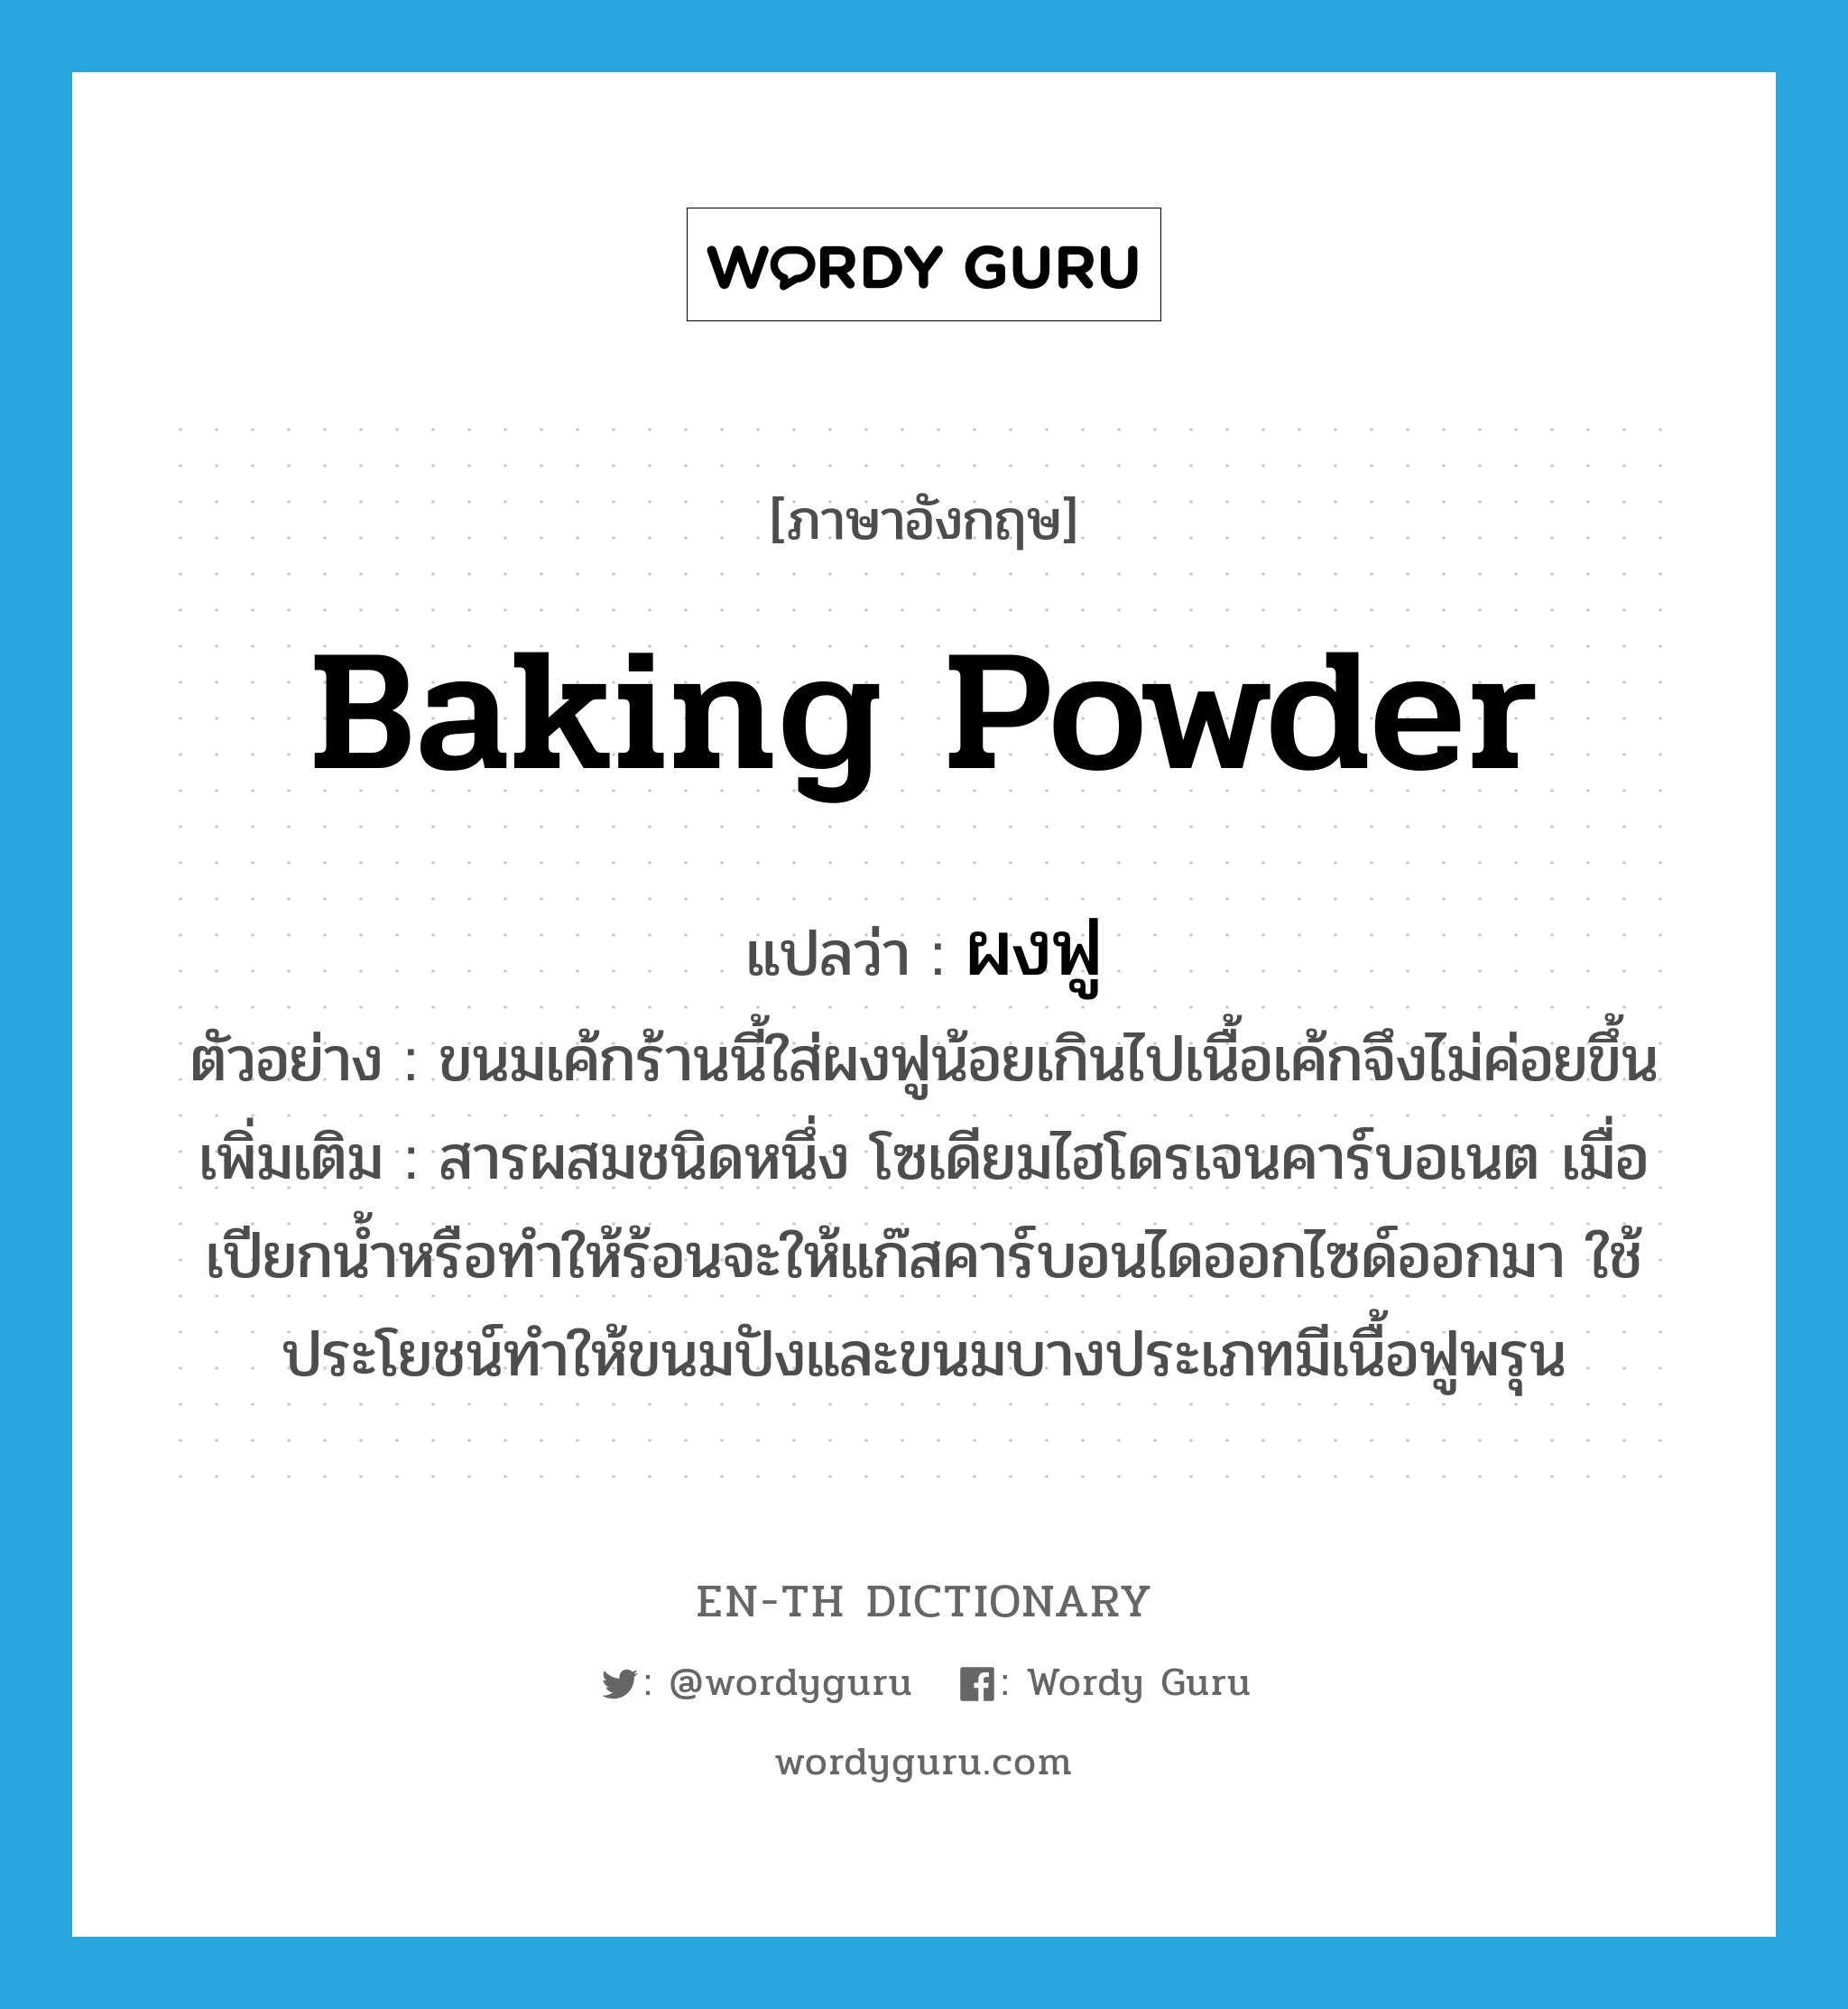 baking powder แปลว่า?, คำศัพท์ภาษาอังกฤษ baking powder แปลว่า ผงฟู ประเภท N ตัวอย่าง ขนมเค้กร้านนี้ใส่ผงฟูน้อยเกินไปเนื้อเค้กจึงไม่ค่อยขึ้น เพิ่มเติม สารผสมชนิดหนึ่ง โซเดียมไฮโดรเจนคาร์บอเนต เมื่อเปียกน้ำหรือทําให้ร้อนจะให้แก๊สคาร์บอนไดออกไซด์ออกมา ใช้ประโยชน์ทําให้ขนมปังและขนมบางประเภทมีเนื้อฟูพรุน หมวด N